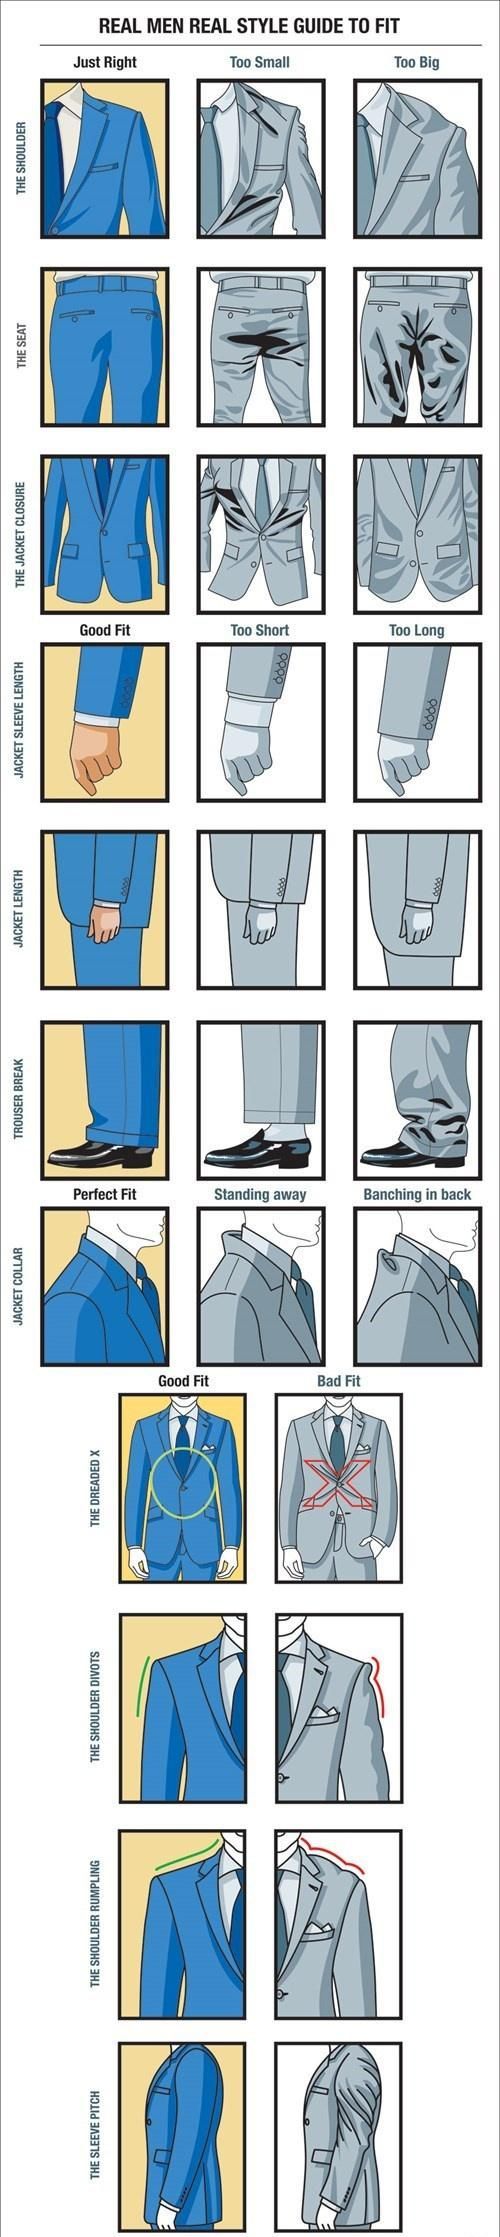 How a Proper Suit should fit